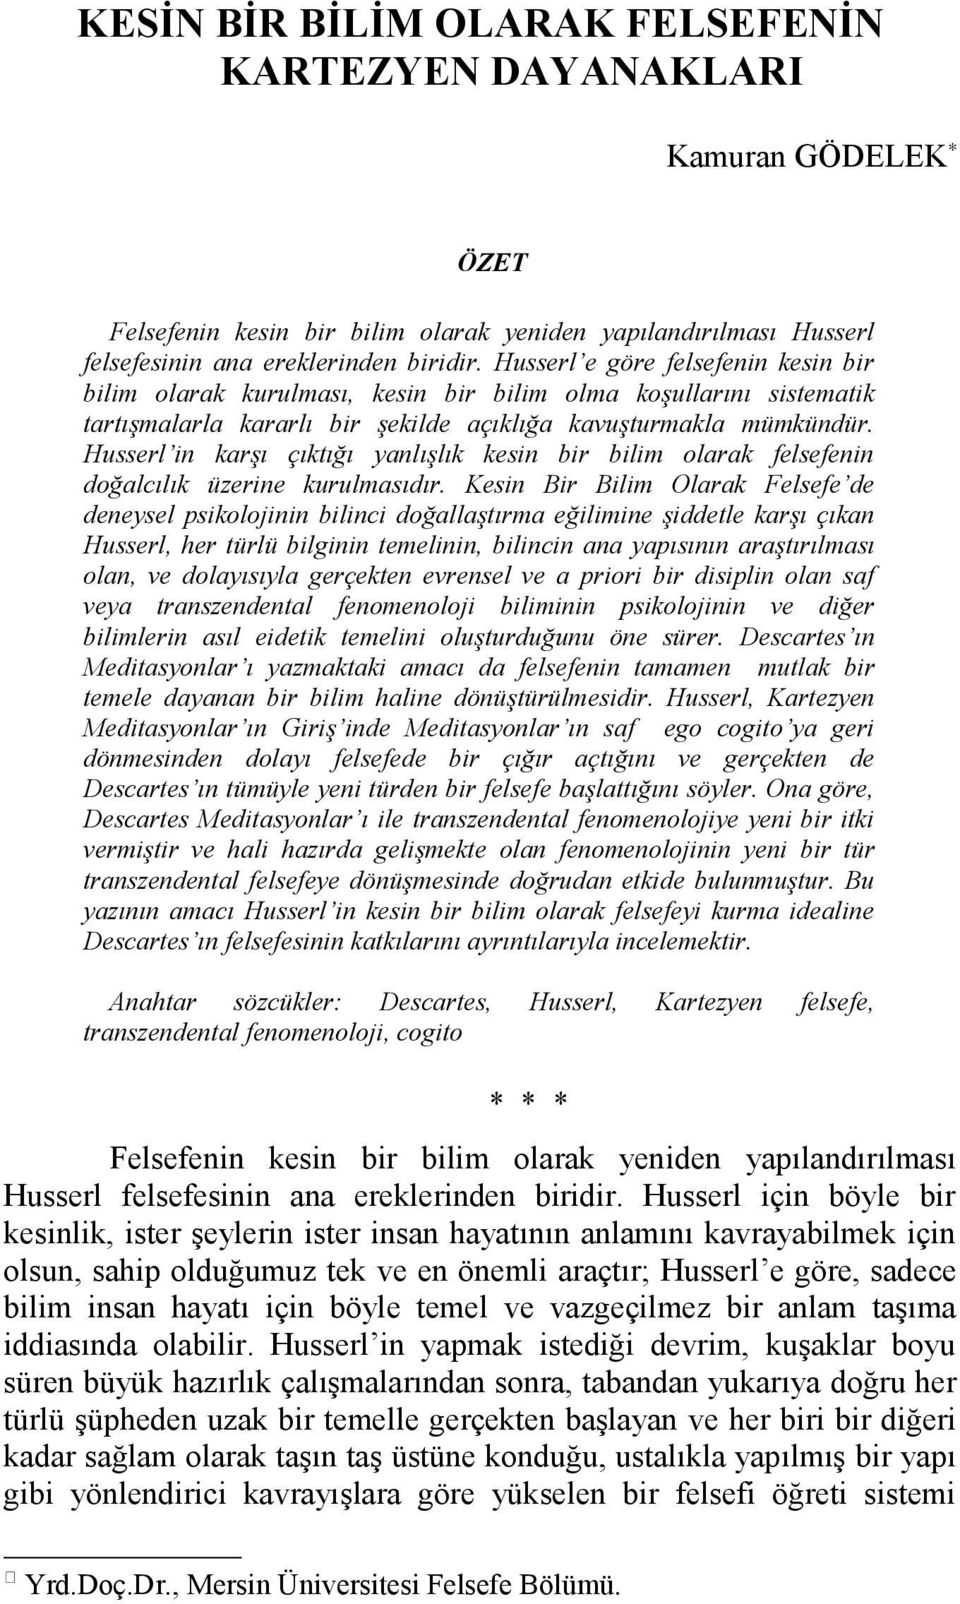 Husserl in karşı çıktığı yanlışlık kesin bir bilim olarak felsefenin doğalcılık üzerine kurulmasıdır.